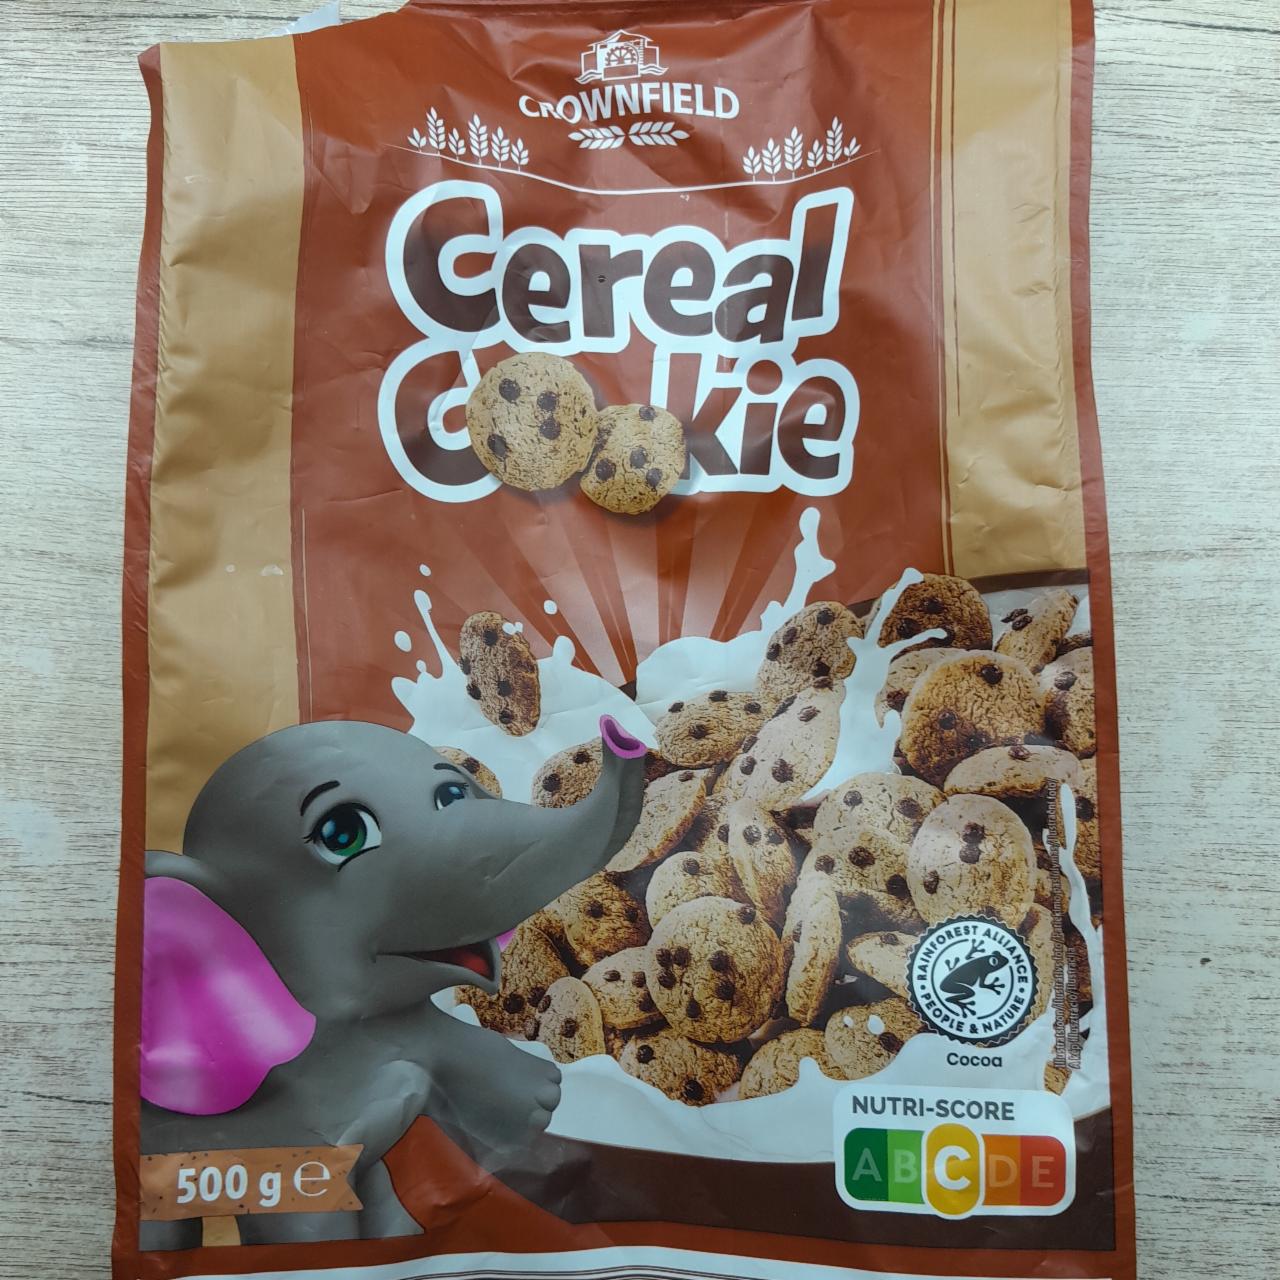 Képek - Cereal Cookie Crownfield